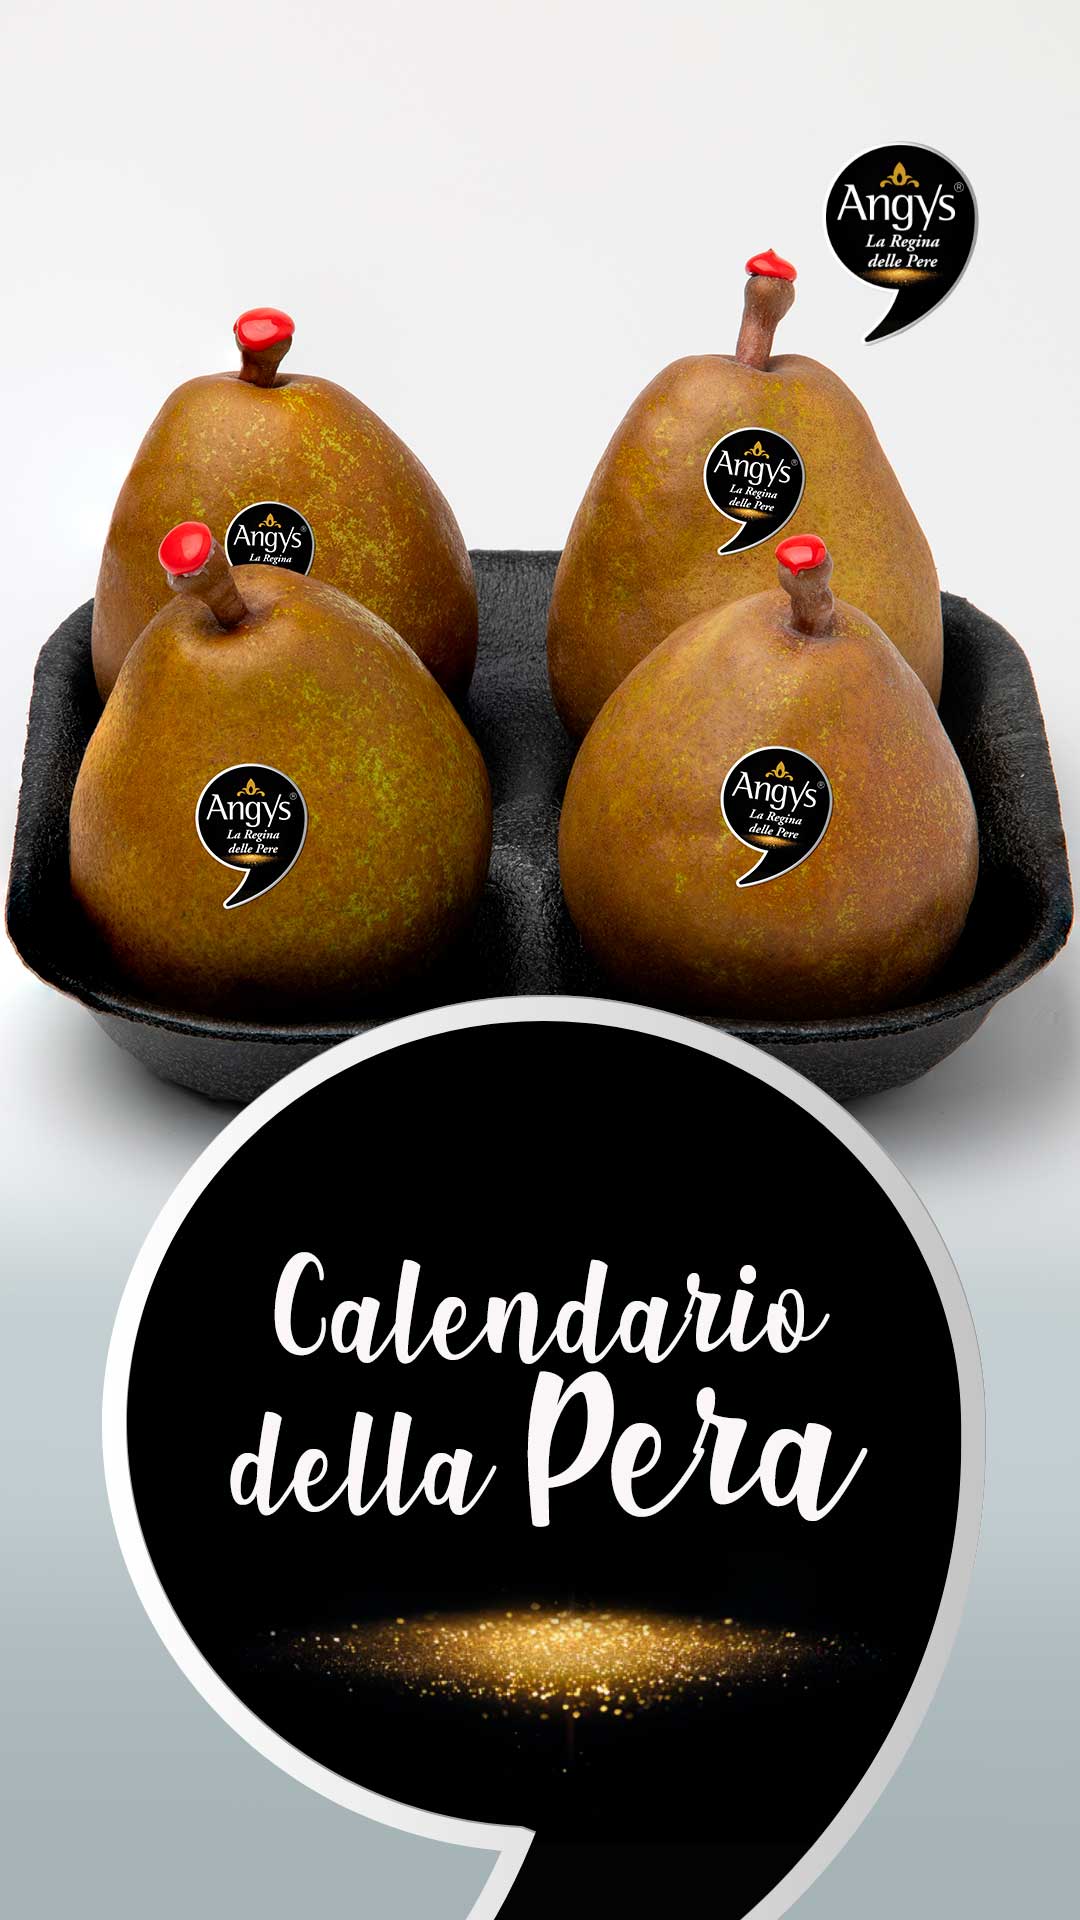 Calendario della pera: mese che arriva, varietà che trovi!